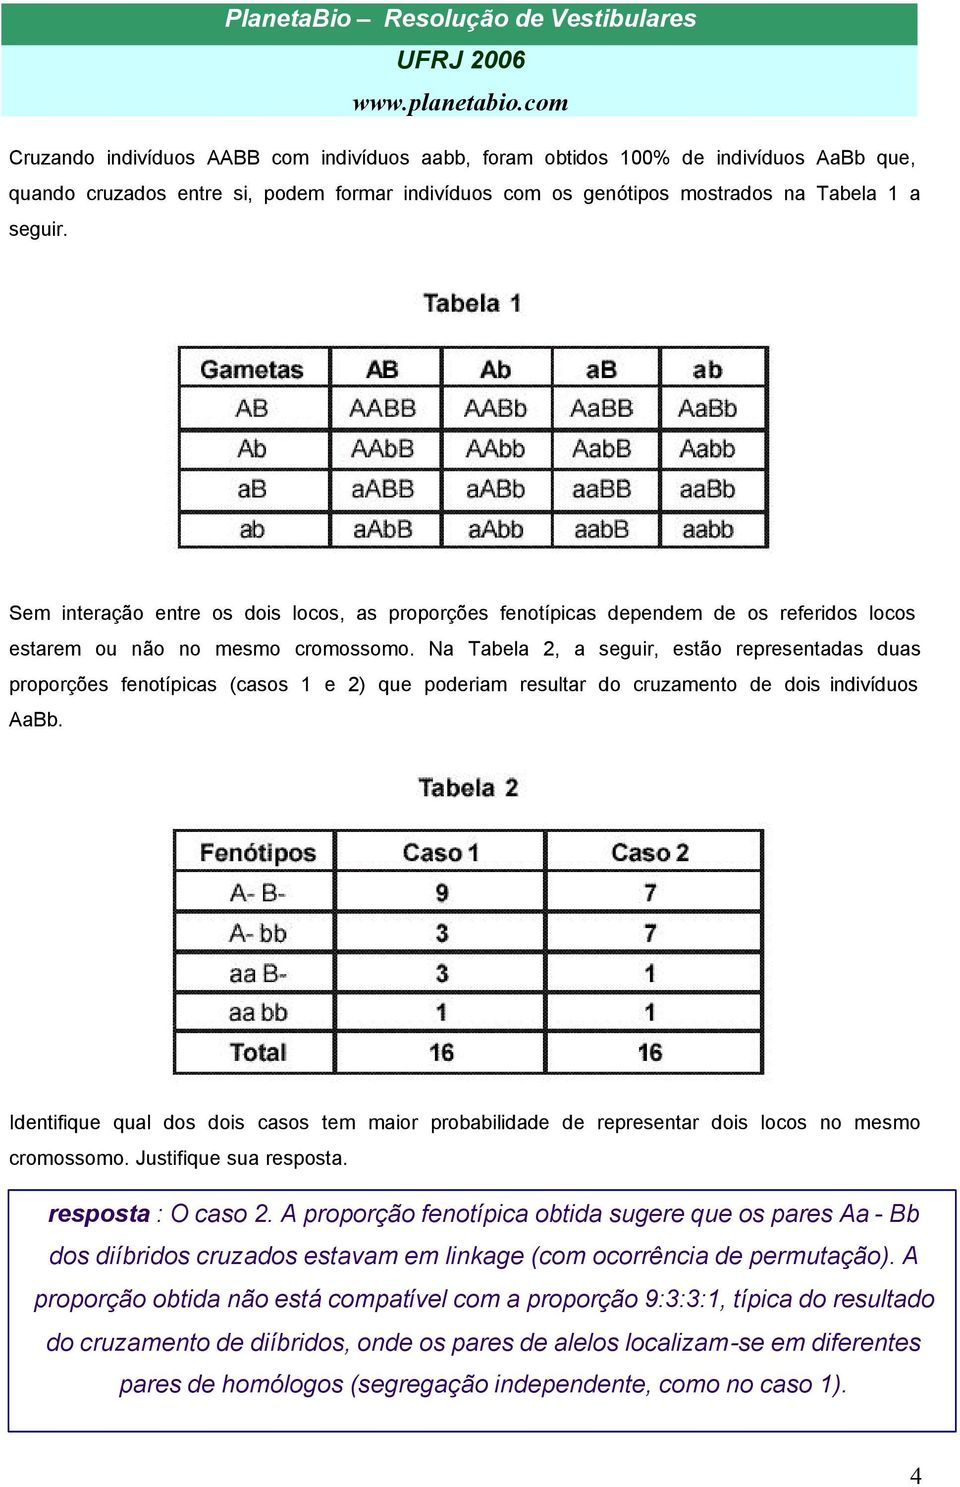 Na Tabela 2, a seguir, estão representadas duas proporções fenotípicas (casos 1 e 2) que poderiam resultar do cruzamento de dois indivíduos AaBb.